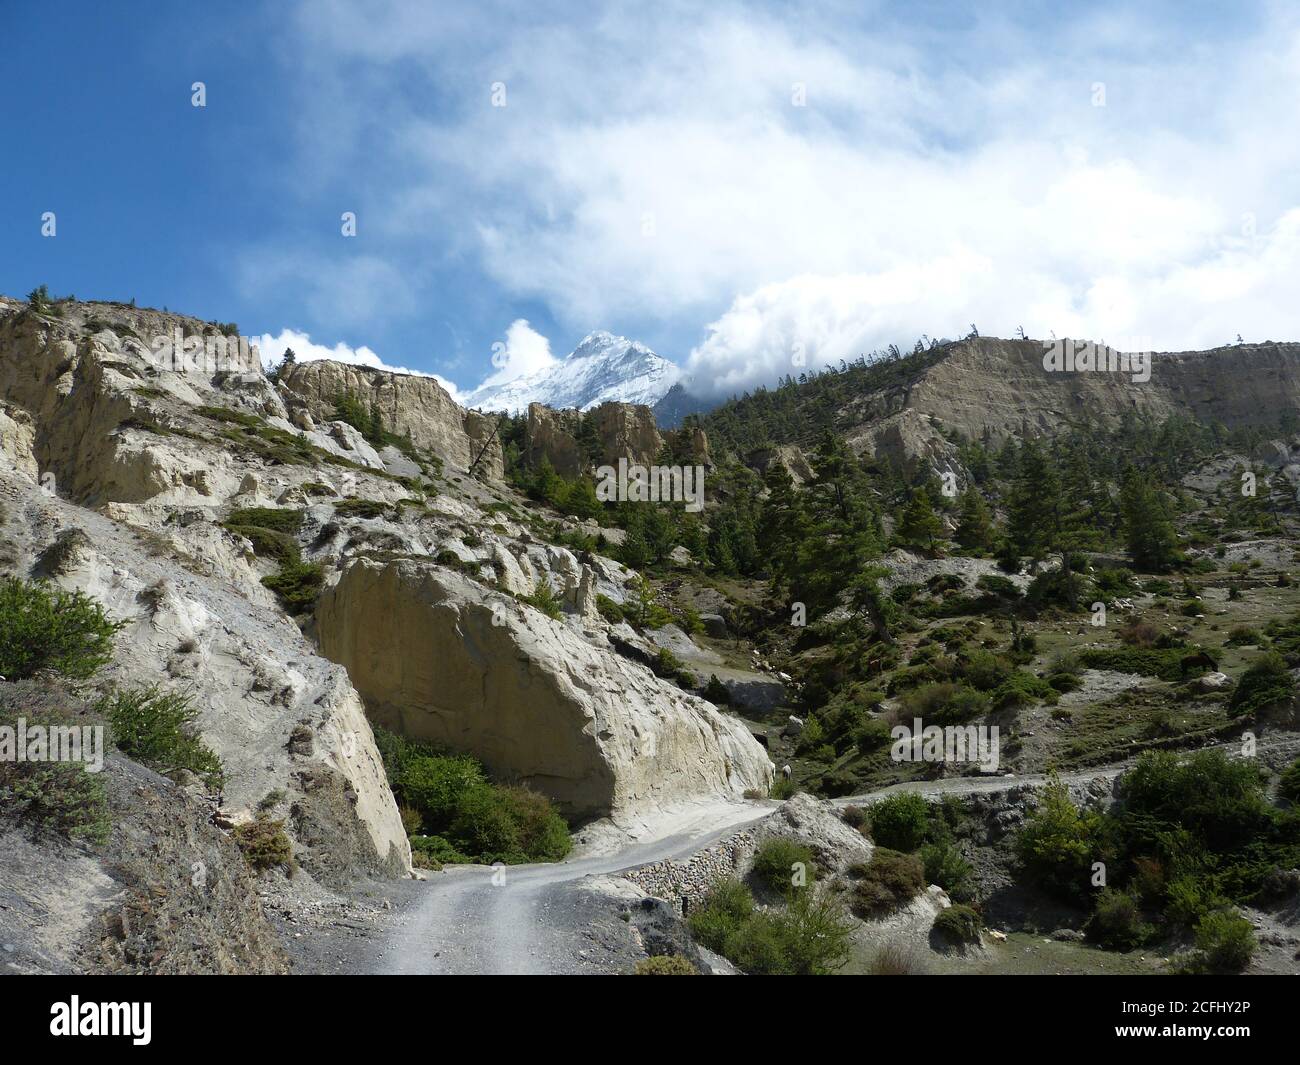 Meraviglioso paesaggio himalayano di Mustang, Nepal. Maestose montagne innevate dell'Himalaya in Tibet. Rocce bianche. Conifere Evergreen. Fantastico supporto Nilgiri. Foto Stock